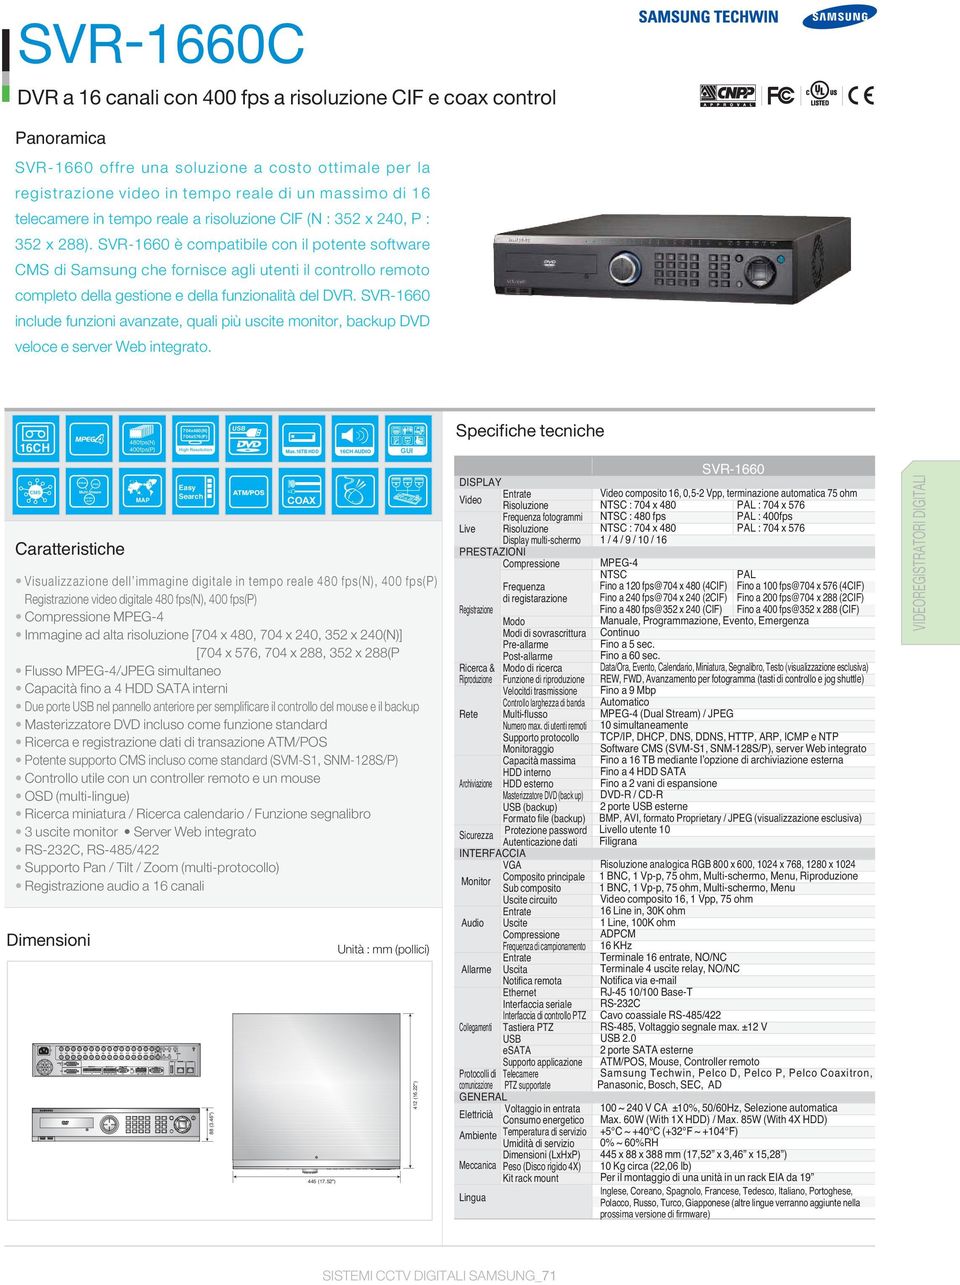 SVR-1660 è compatibile con il potente software CMS di Samsung che fornisce agli utenti il controllo remoto completo della gestione e della funzionalità del DVR.